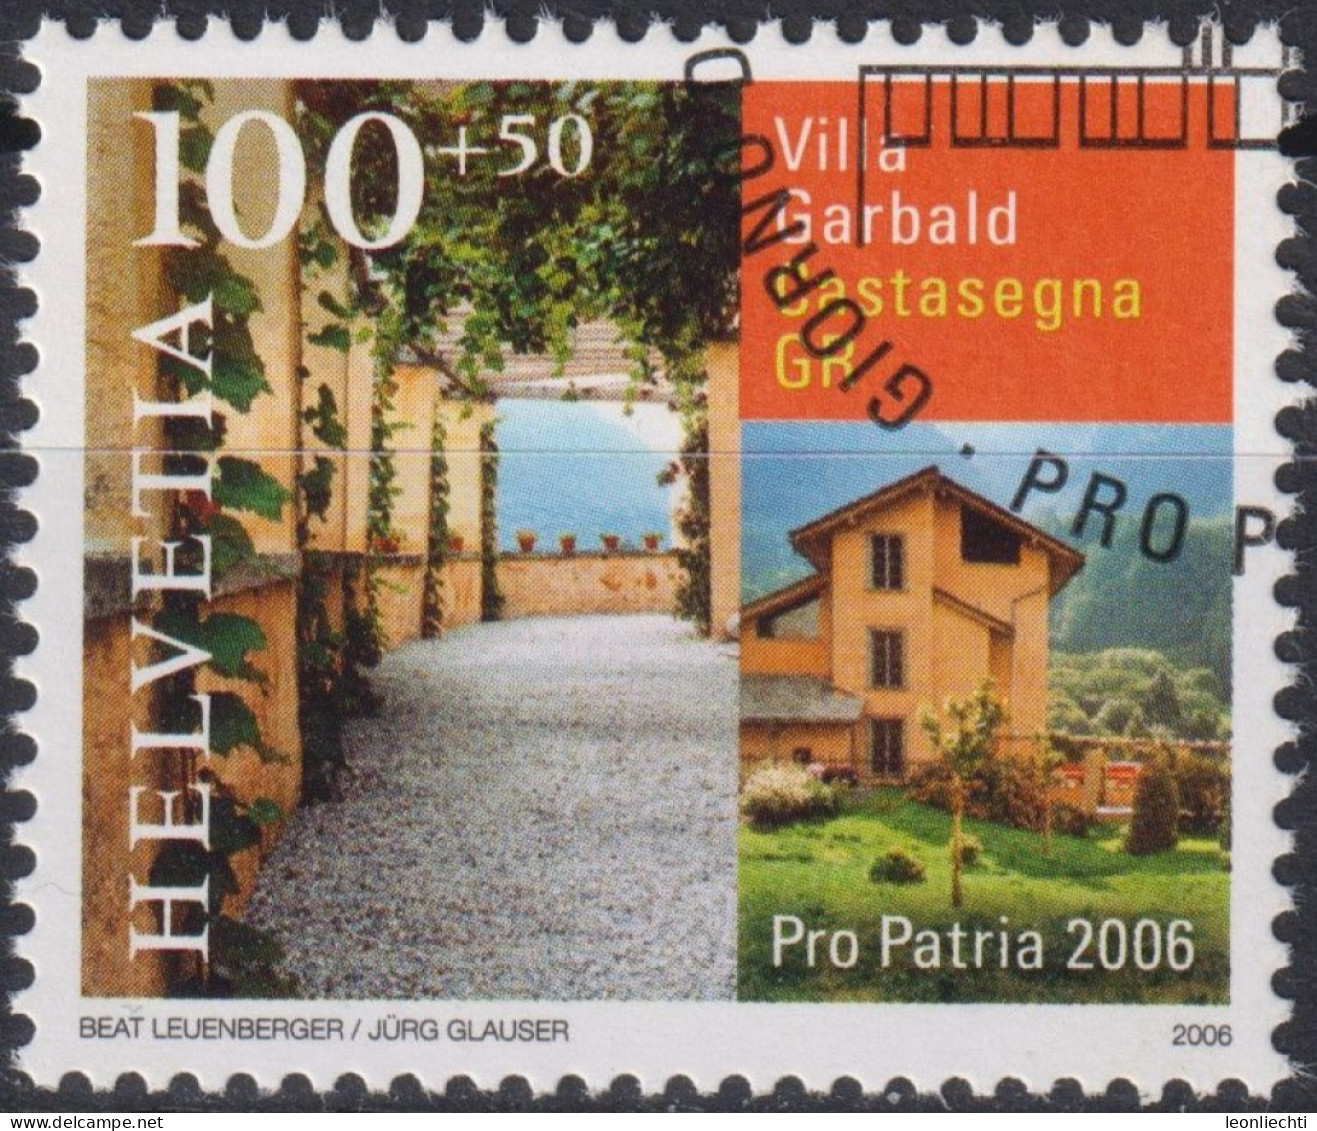 2006 Schweiz Pro Patria, Villa Garbald, Castasegna GR ⵙ Zum:CH B294, Mi:CH 1963, Yt:CH 1890 - Oblitérés